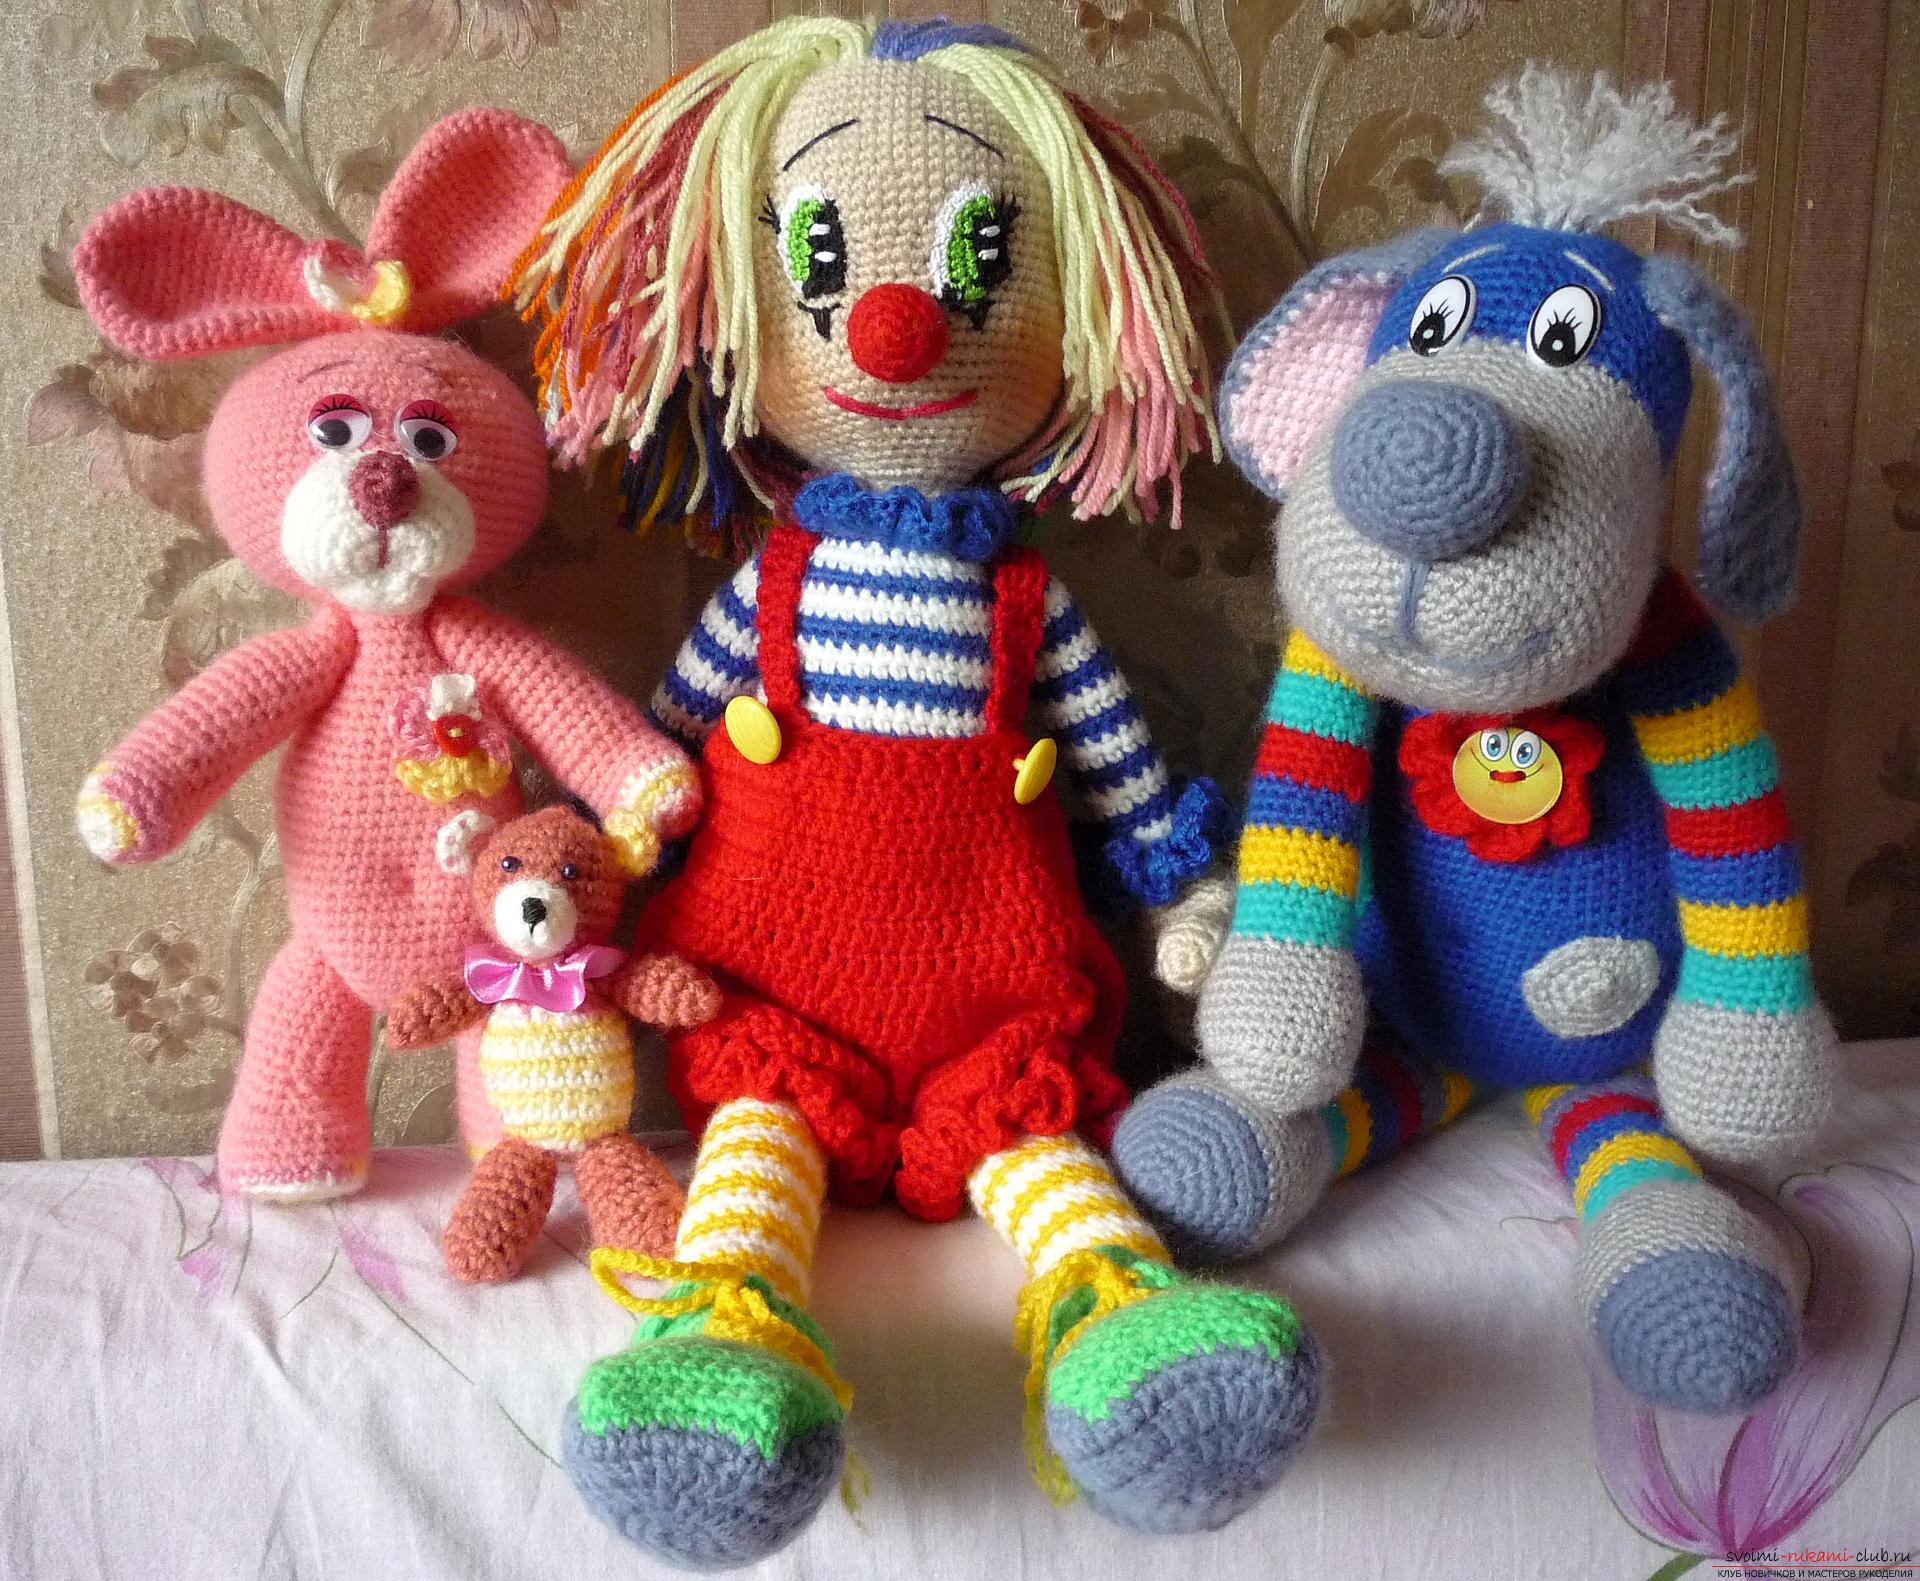 Подробные фотографии игрушки клоуна, связанного крючком из разноцветной пряжи. Фото №7